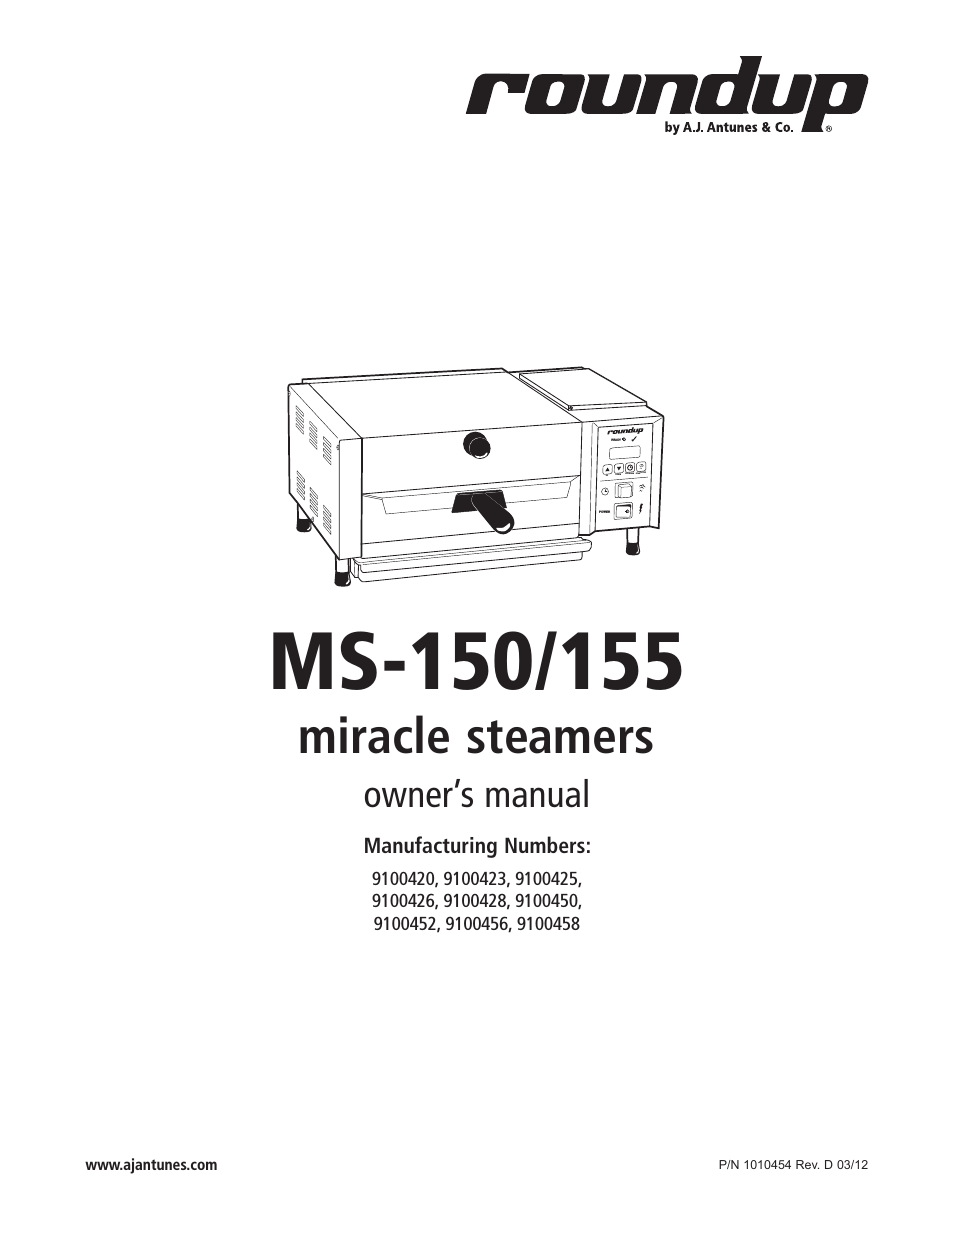 MS-155 9100456